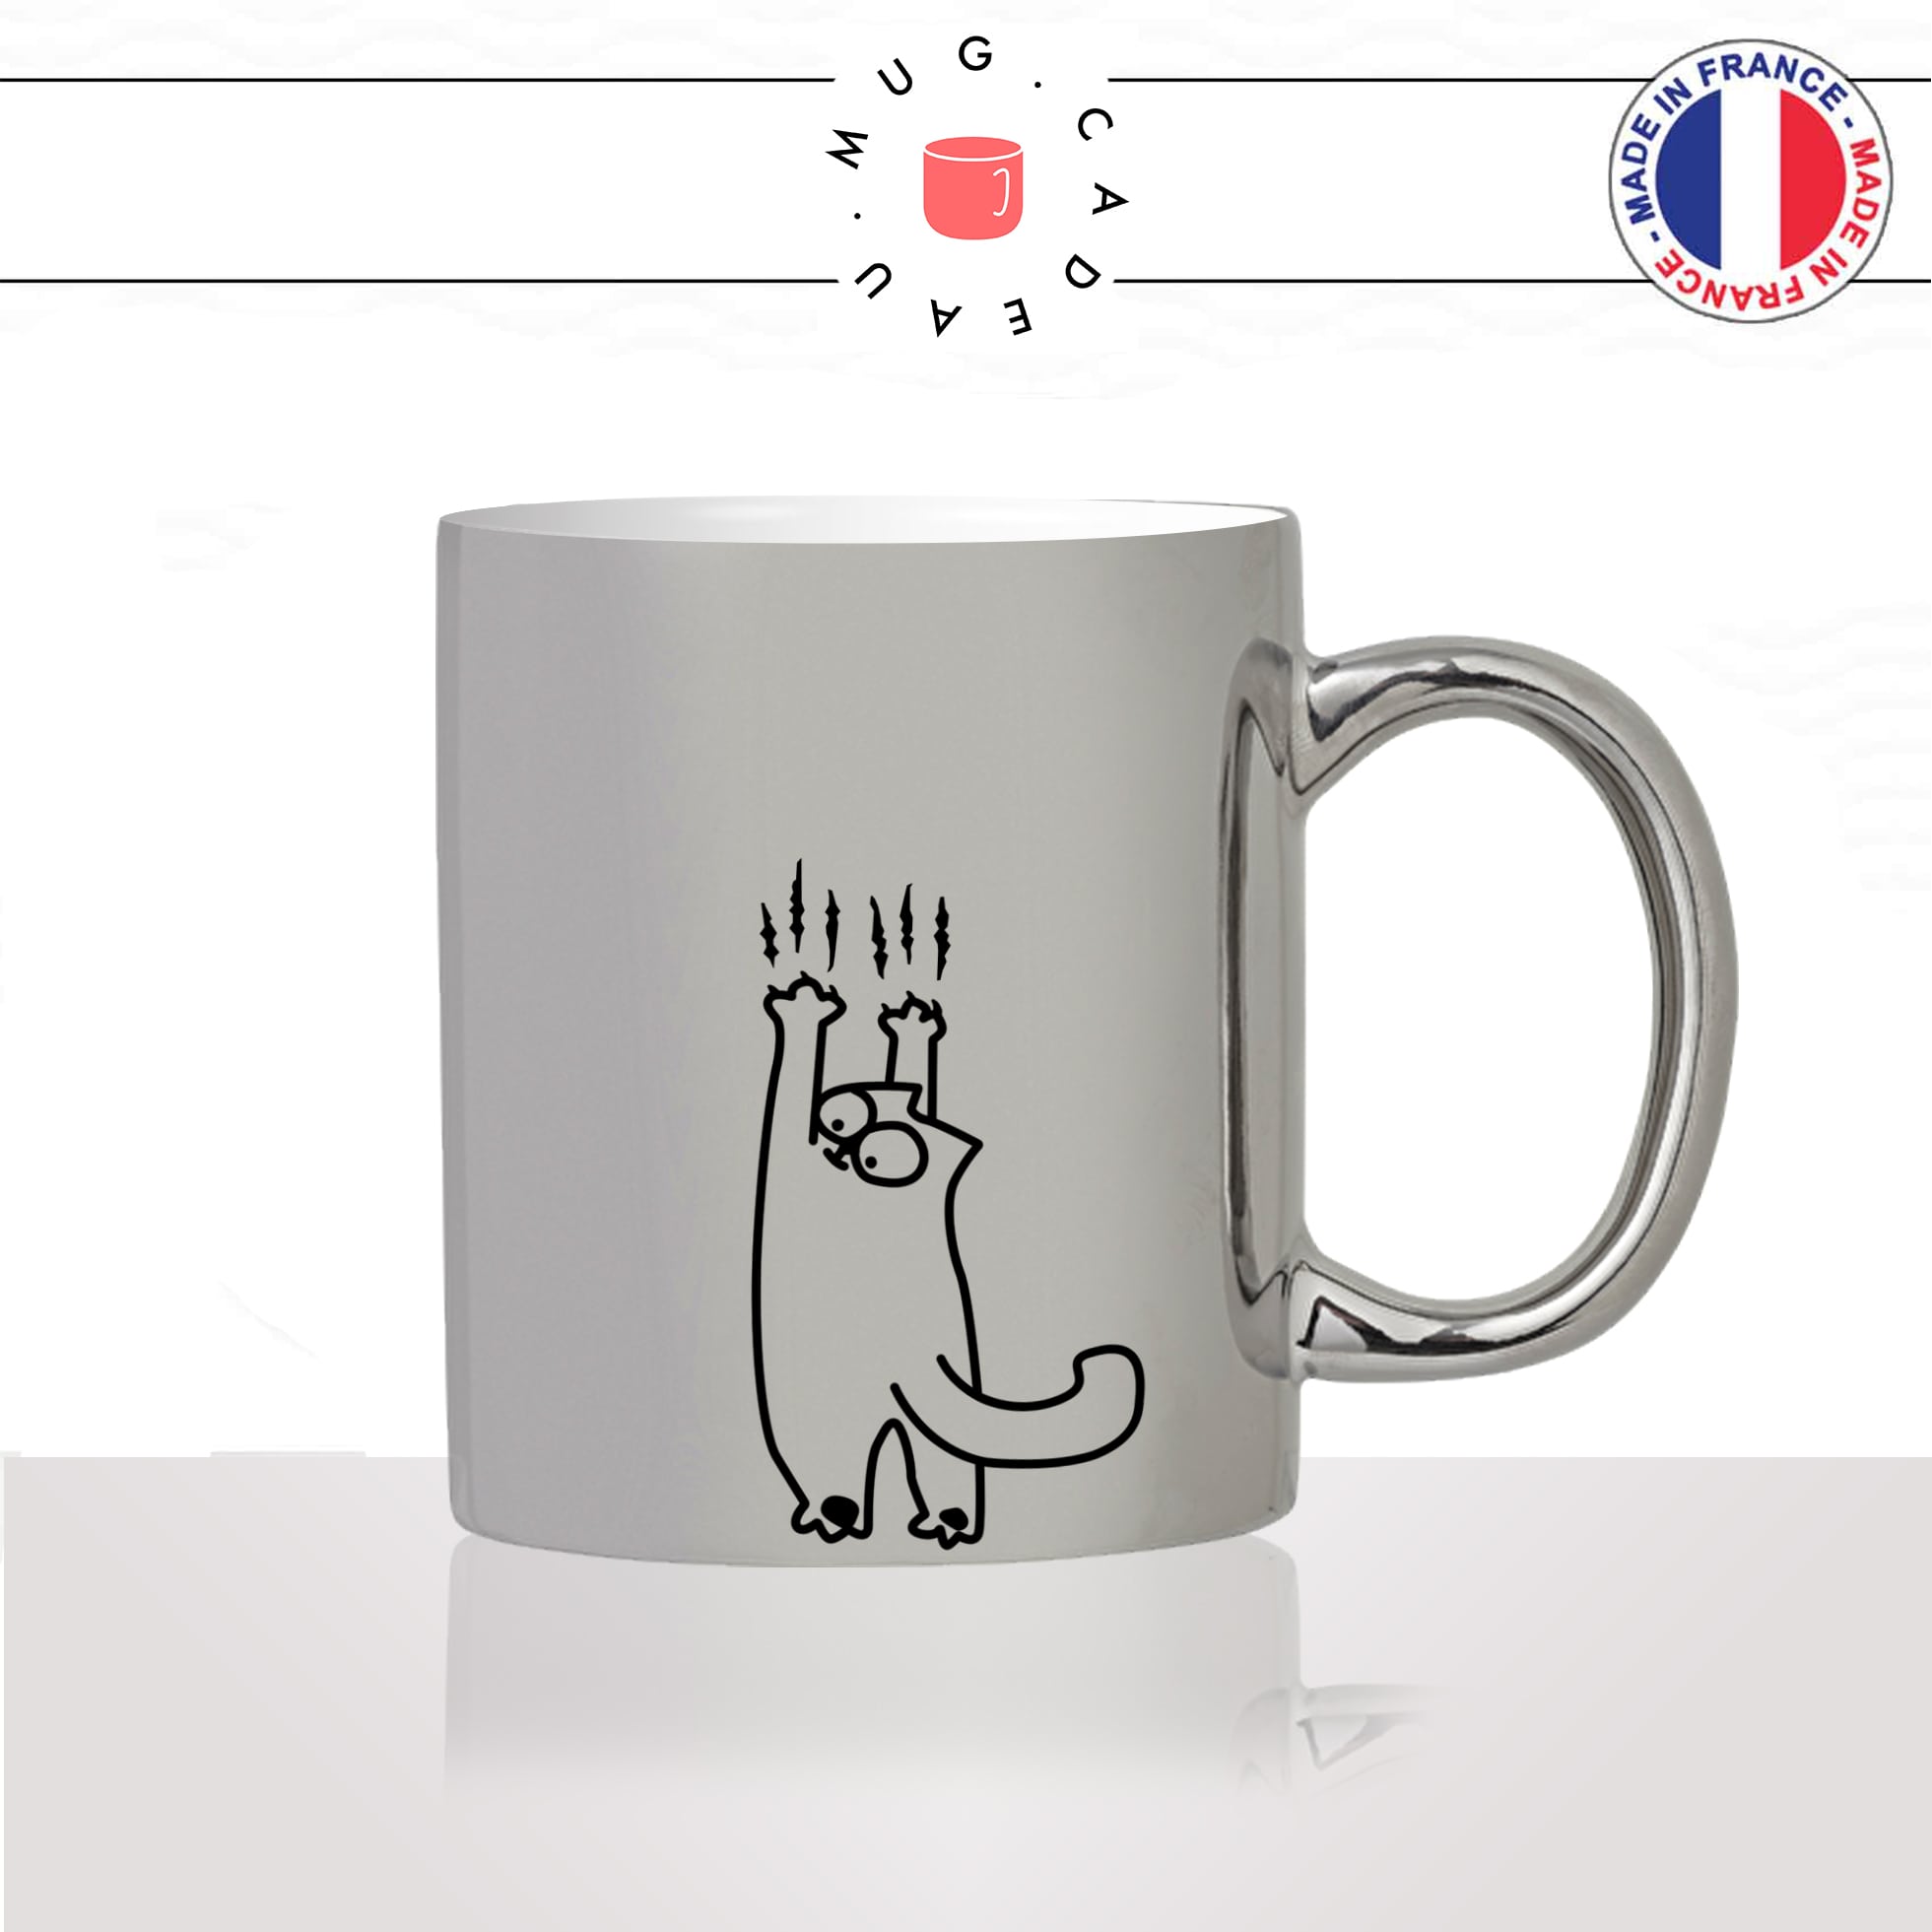 mug-tasse-argenté-silver-griffes-griffures-chats-animal-chaton-dessin-noir-fun-café-thé-idée-cadeau-original-personnalisé2-min